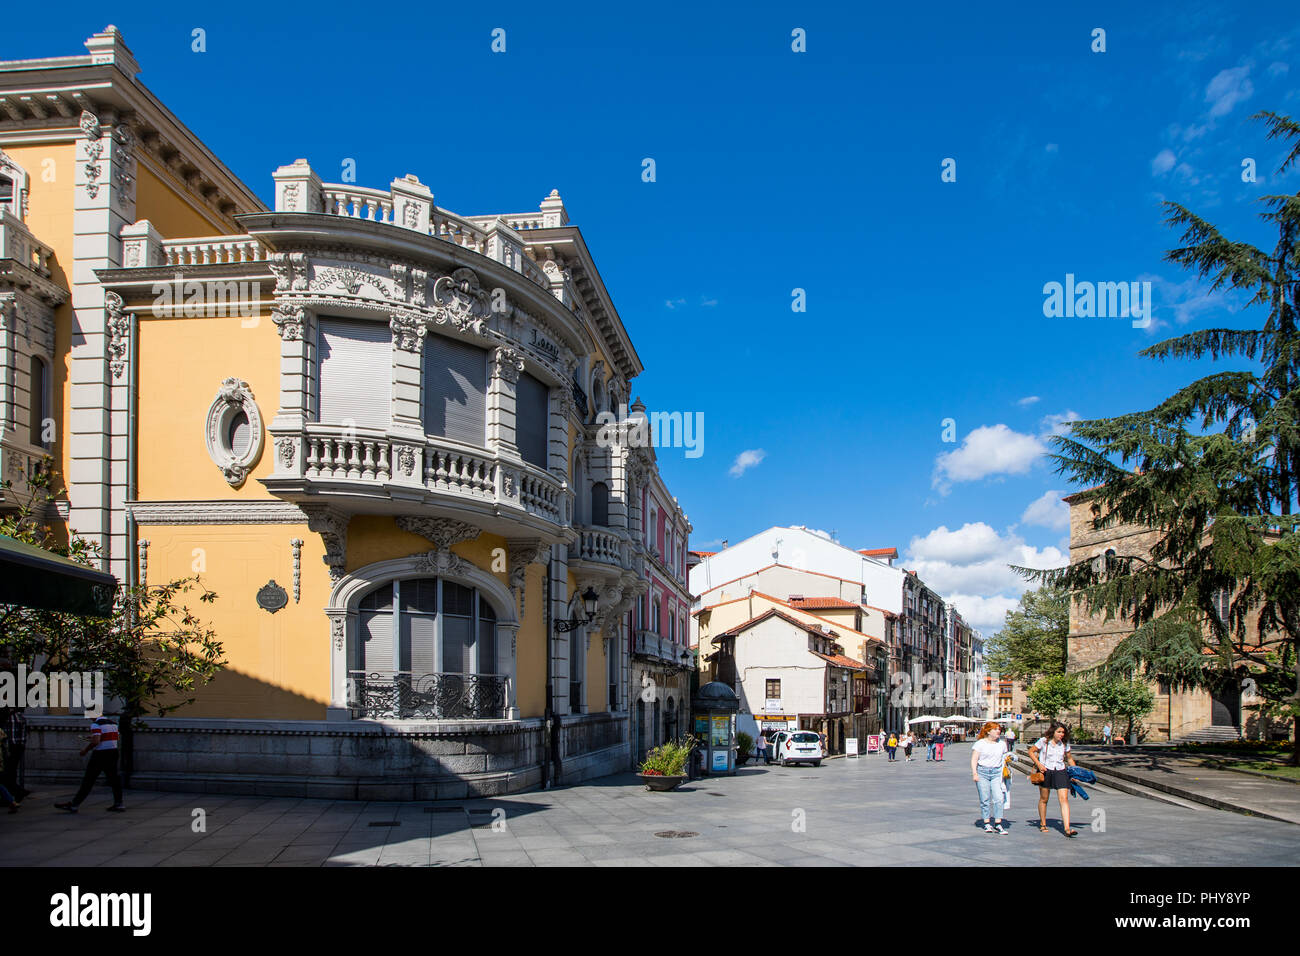 La ville d'Avilés dans les Asturies, au nord ouest de l'Espagne Banque D'Images